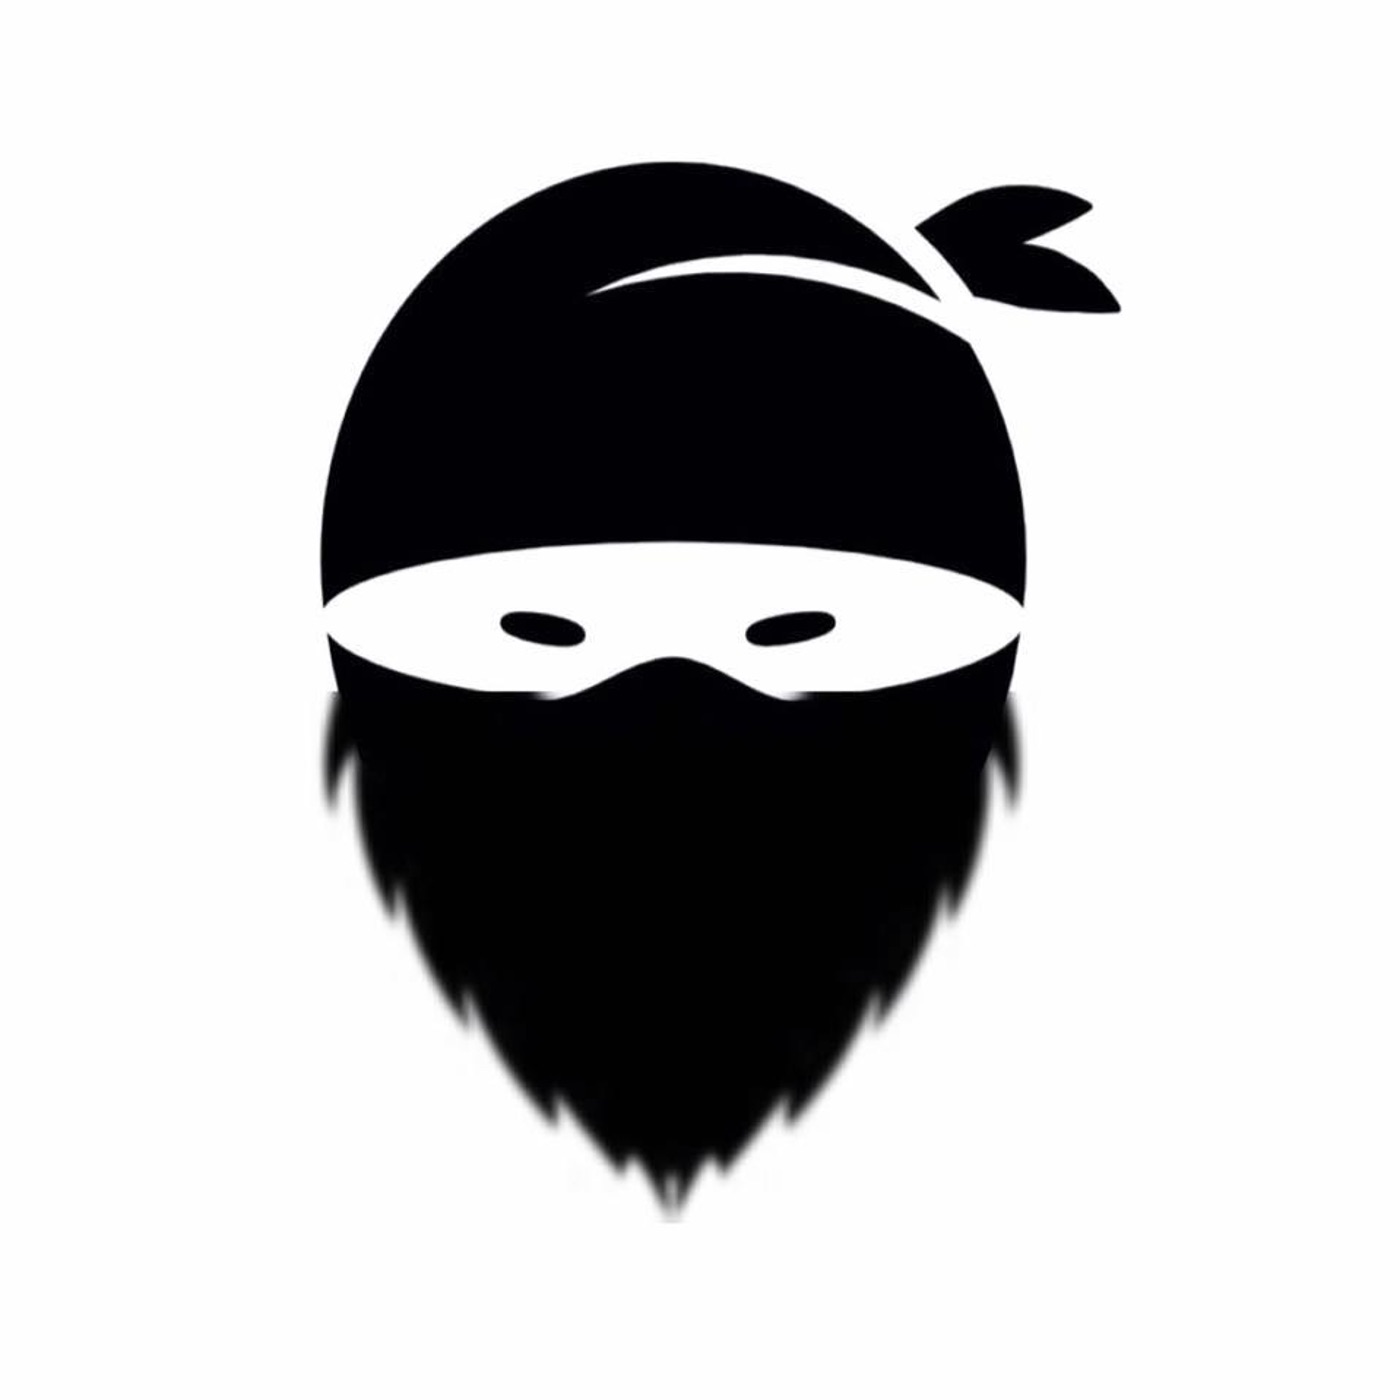 Bearded Ninjas Randomness!